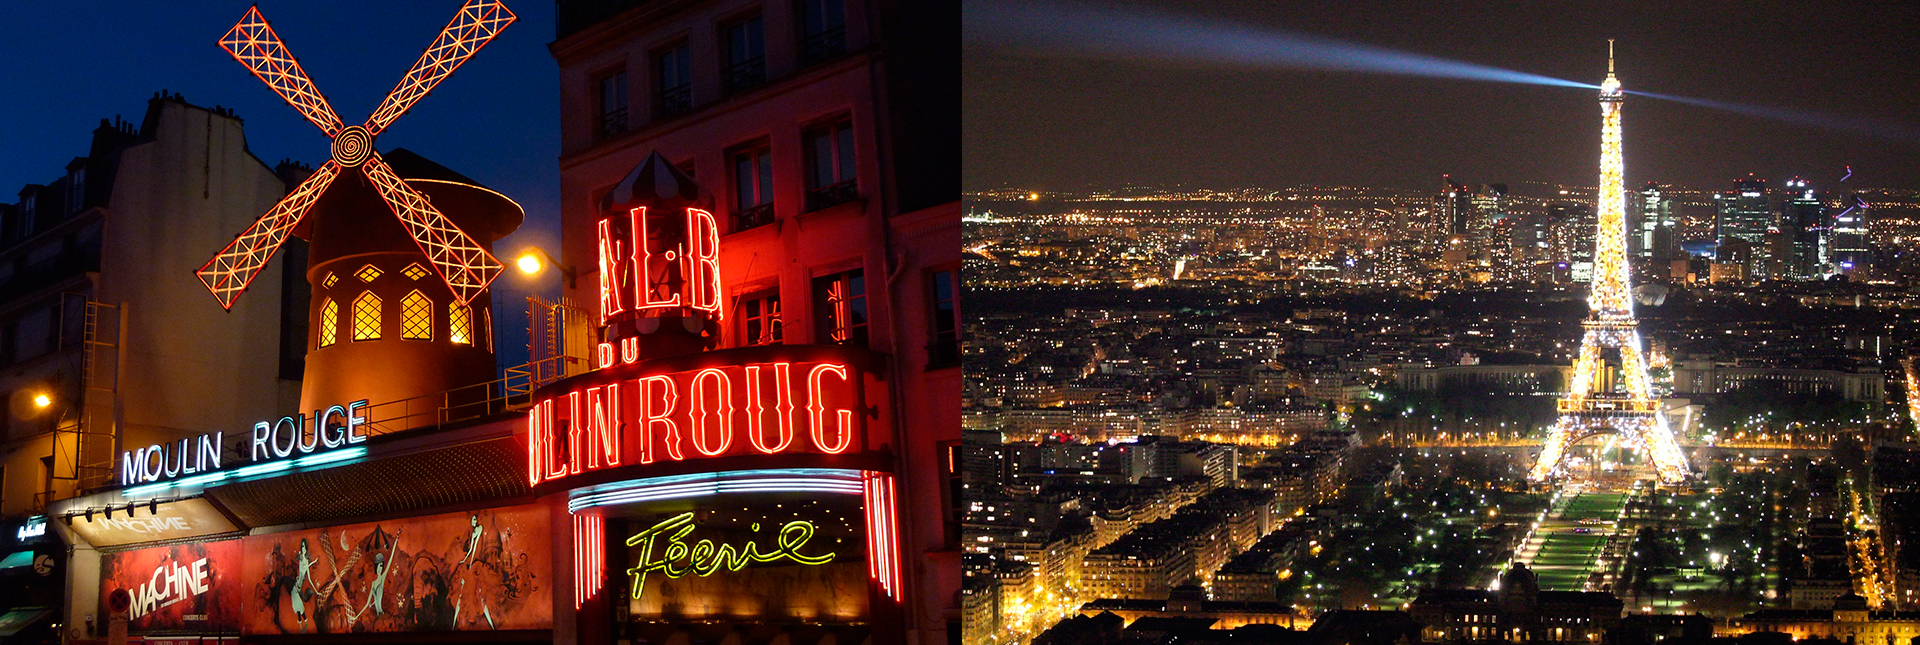 Cena Torre Eiffel, Crucero Y Moulin Rouge